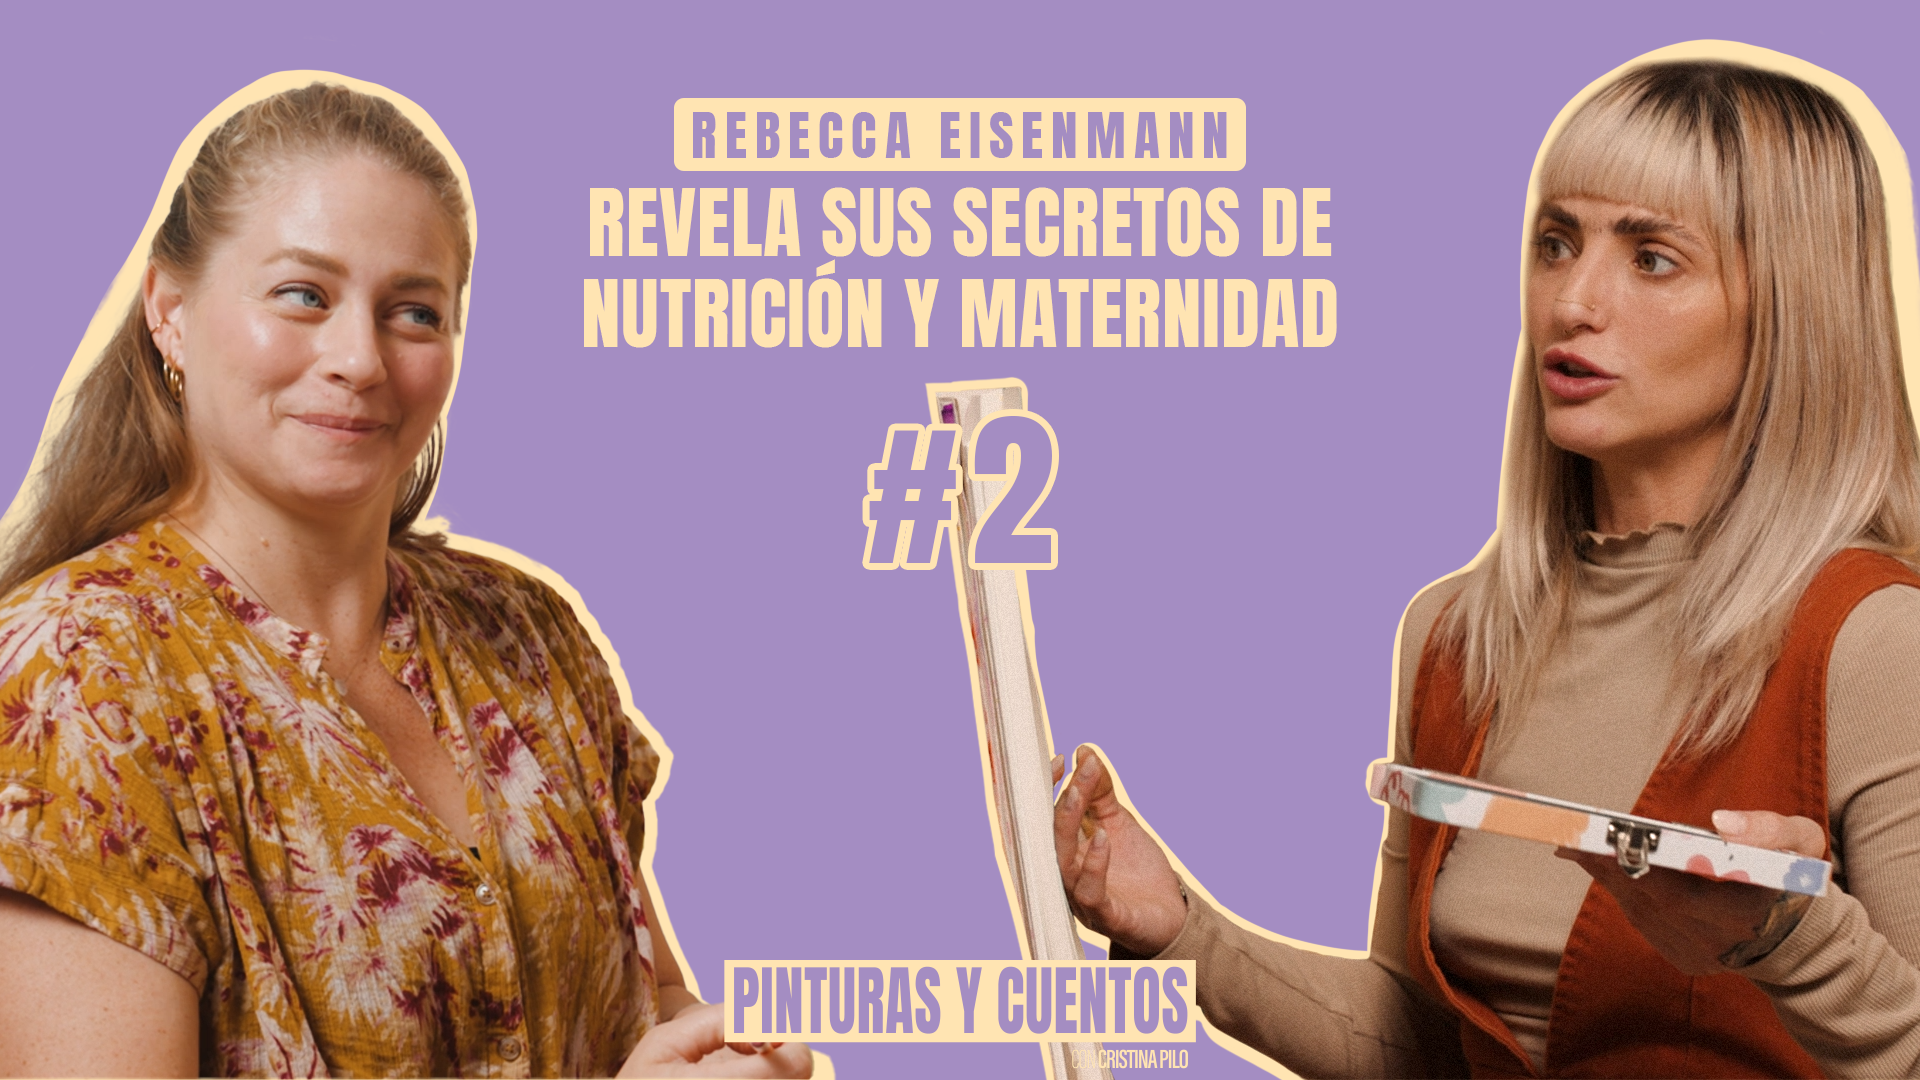 REBECCA EISENMANN REVELA SUS SECRETOS DE NUTRICIÓN Y MATERNIDAD | PINTURAS Y CUENTOS | #EP02